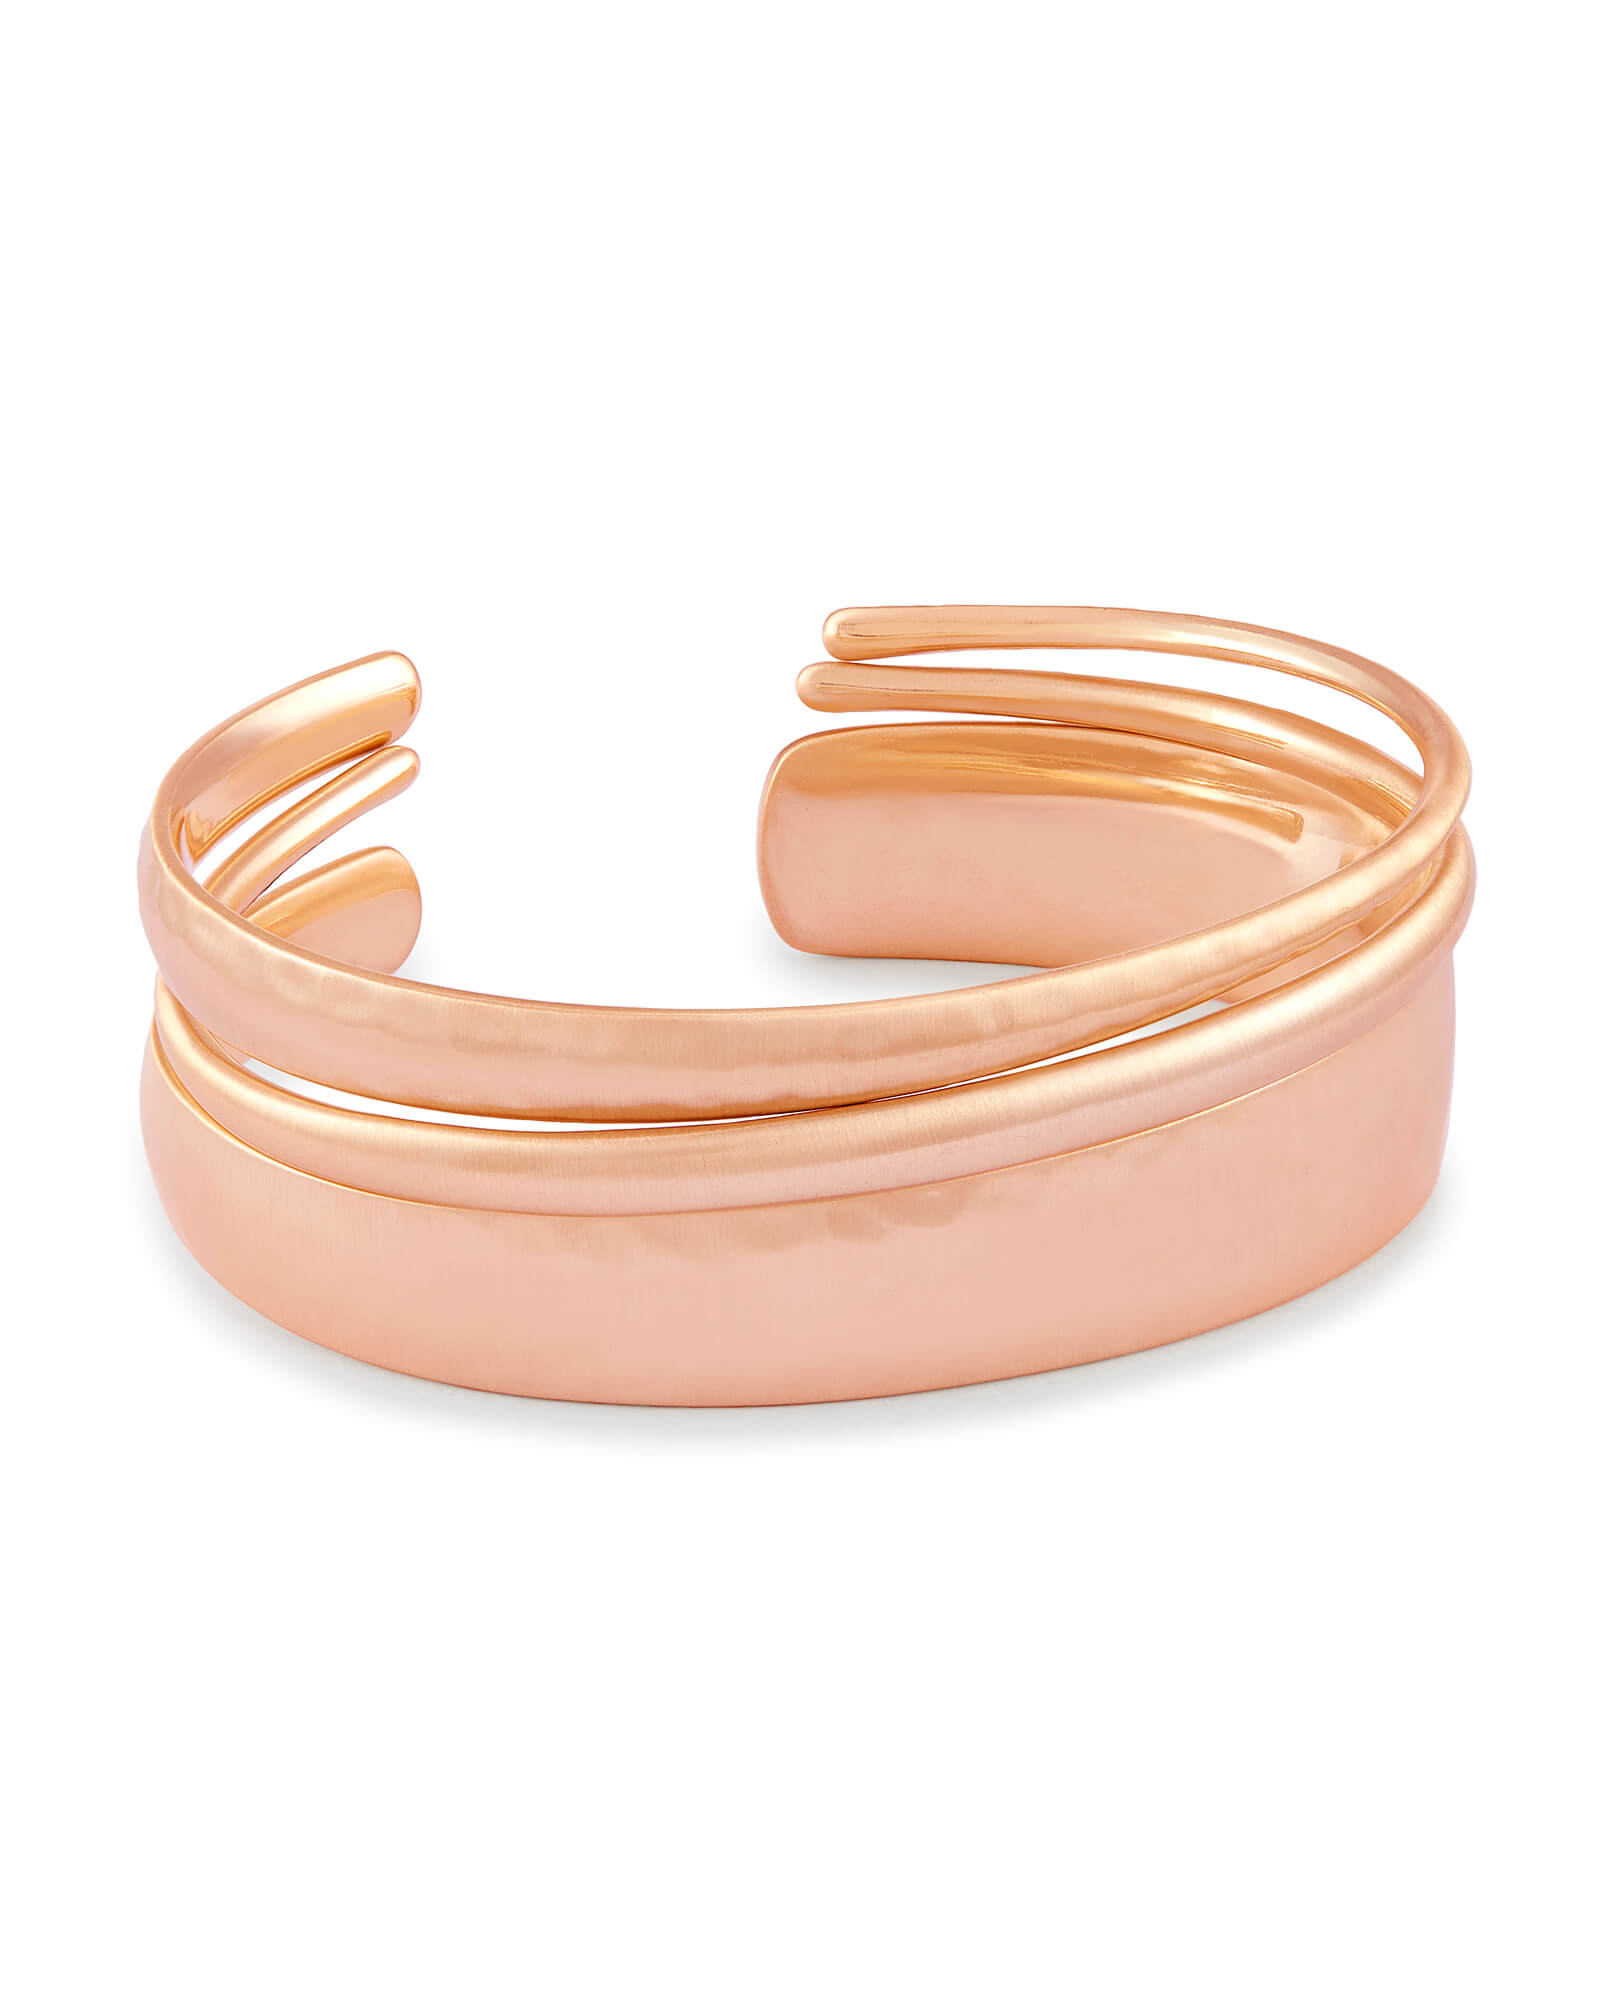 Tiana Pinch Bracelet Set in Rose Gold | KendraScott